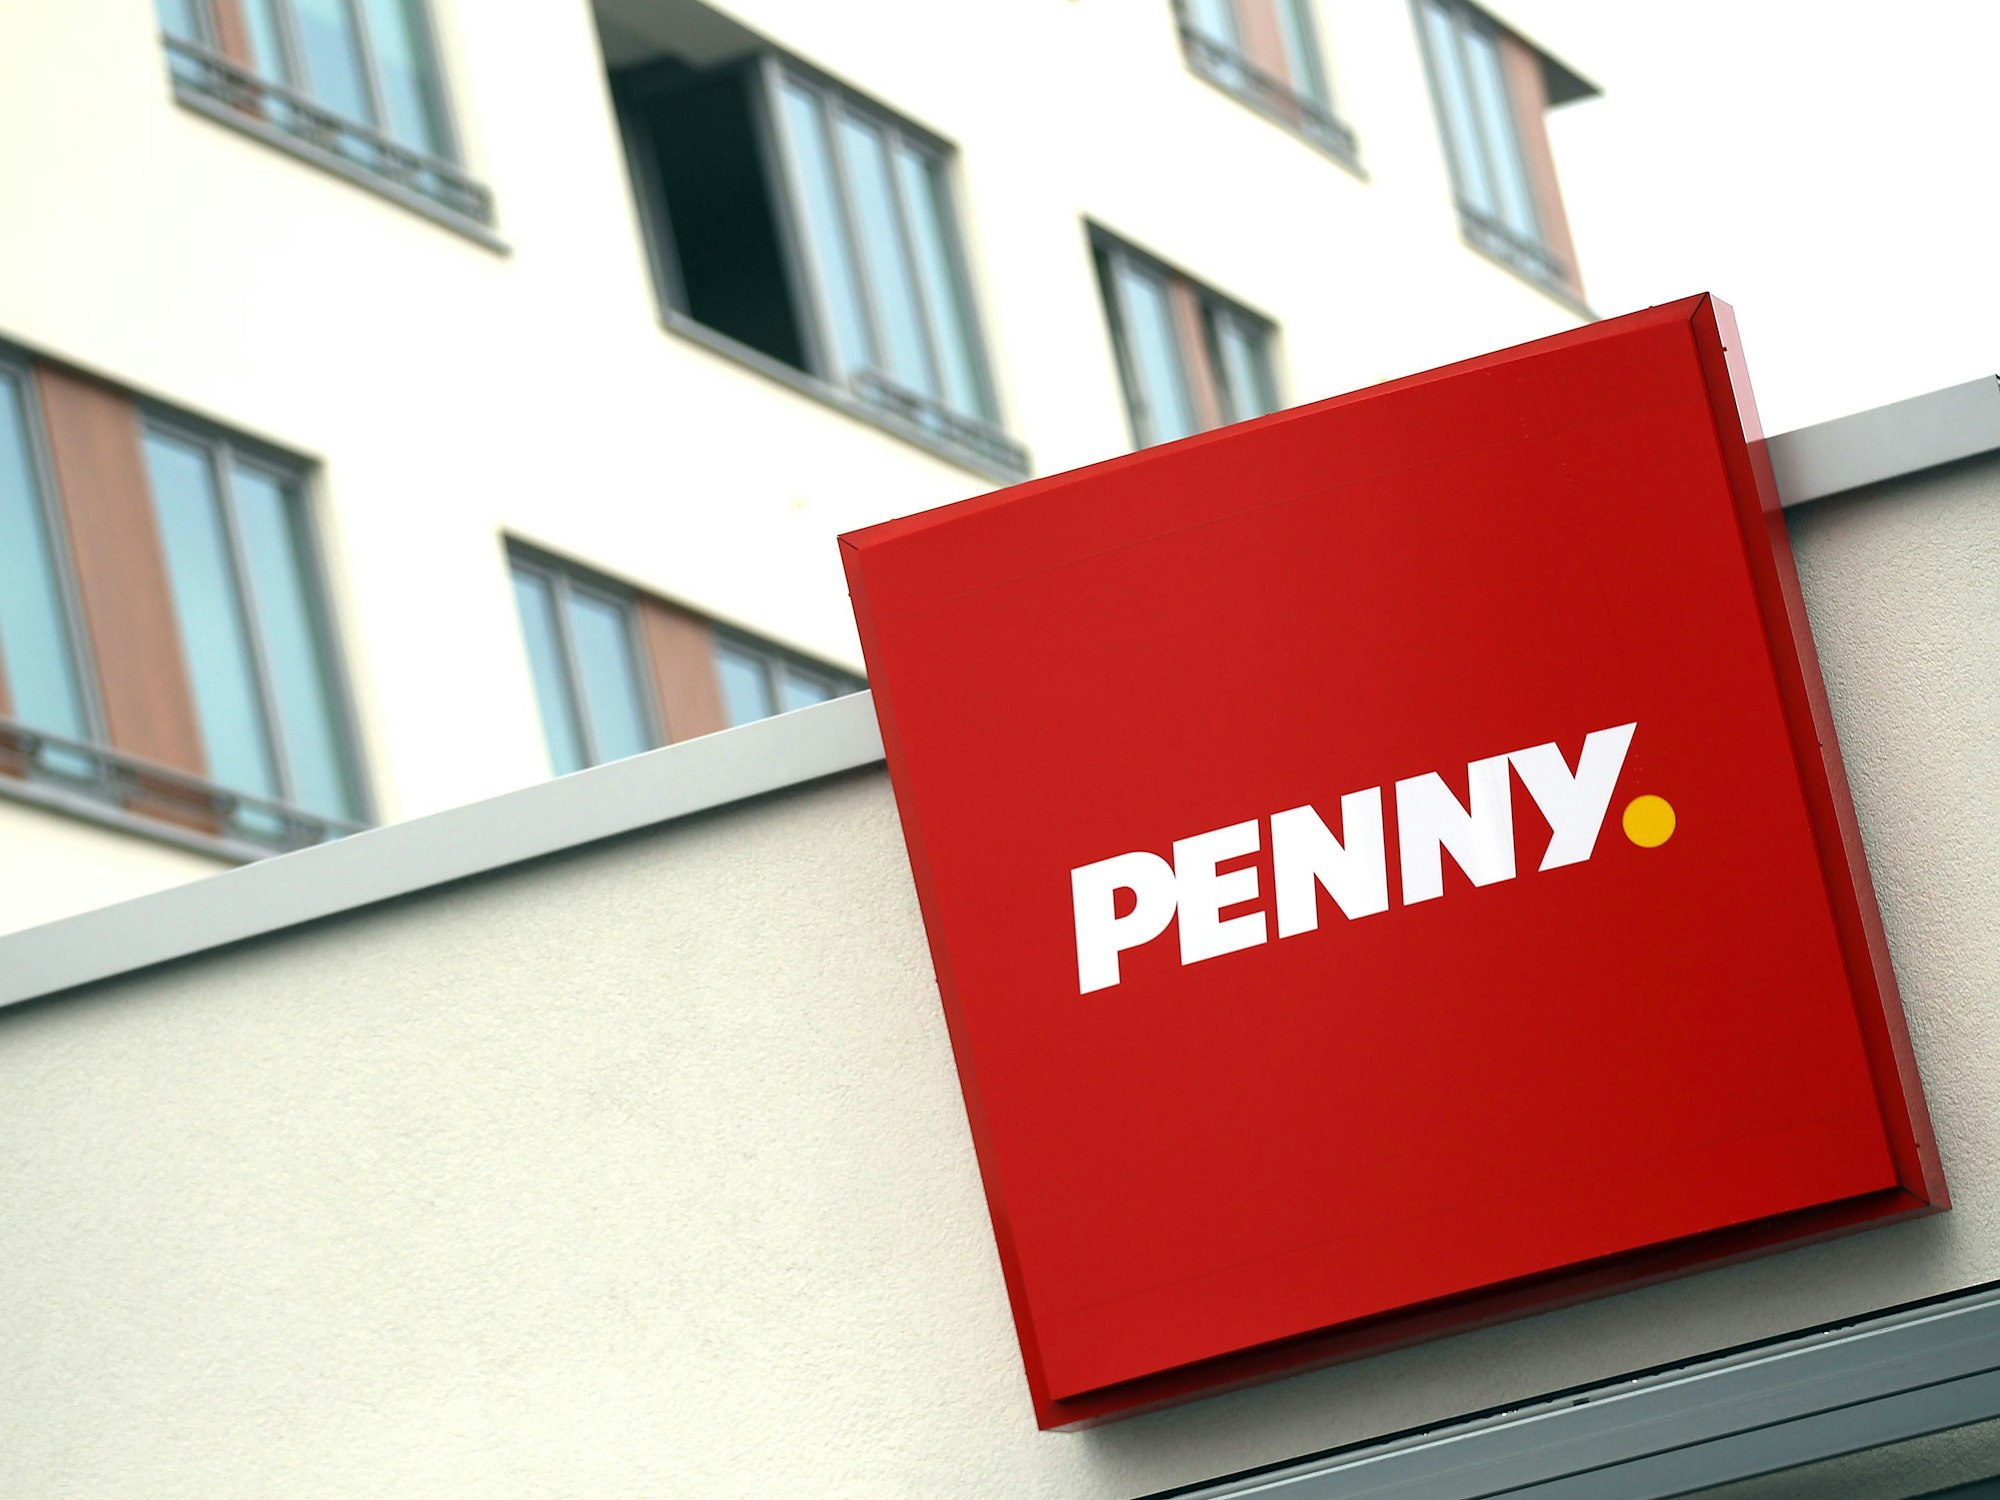 Das Logo des Lebensmittel-Discounters "Penny" an einem Markt in Köln.